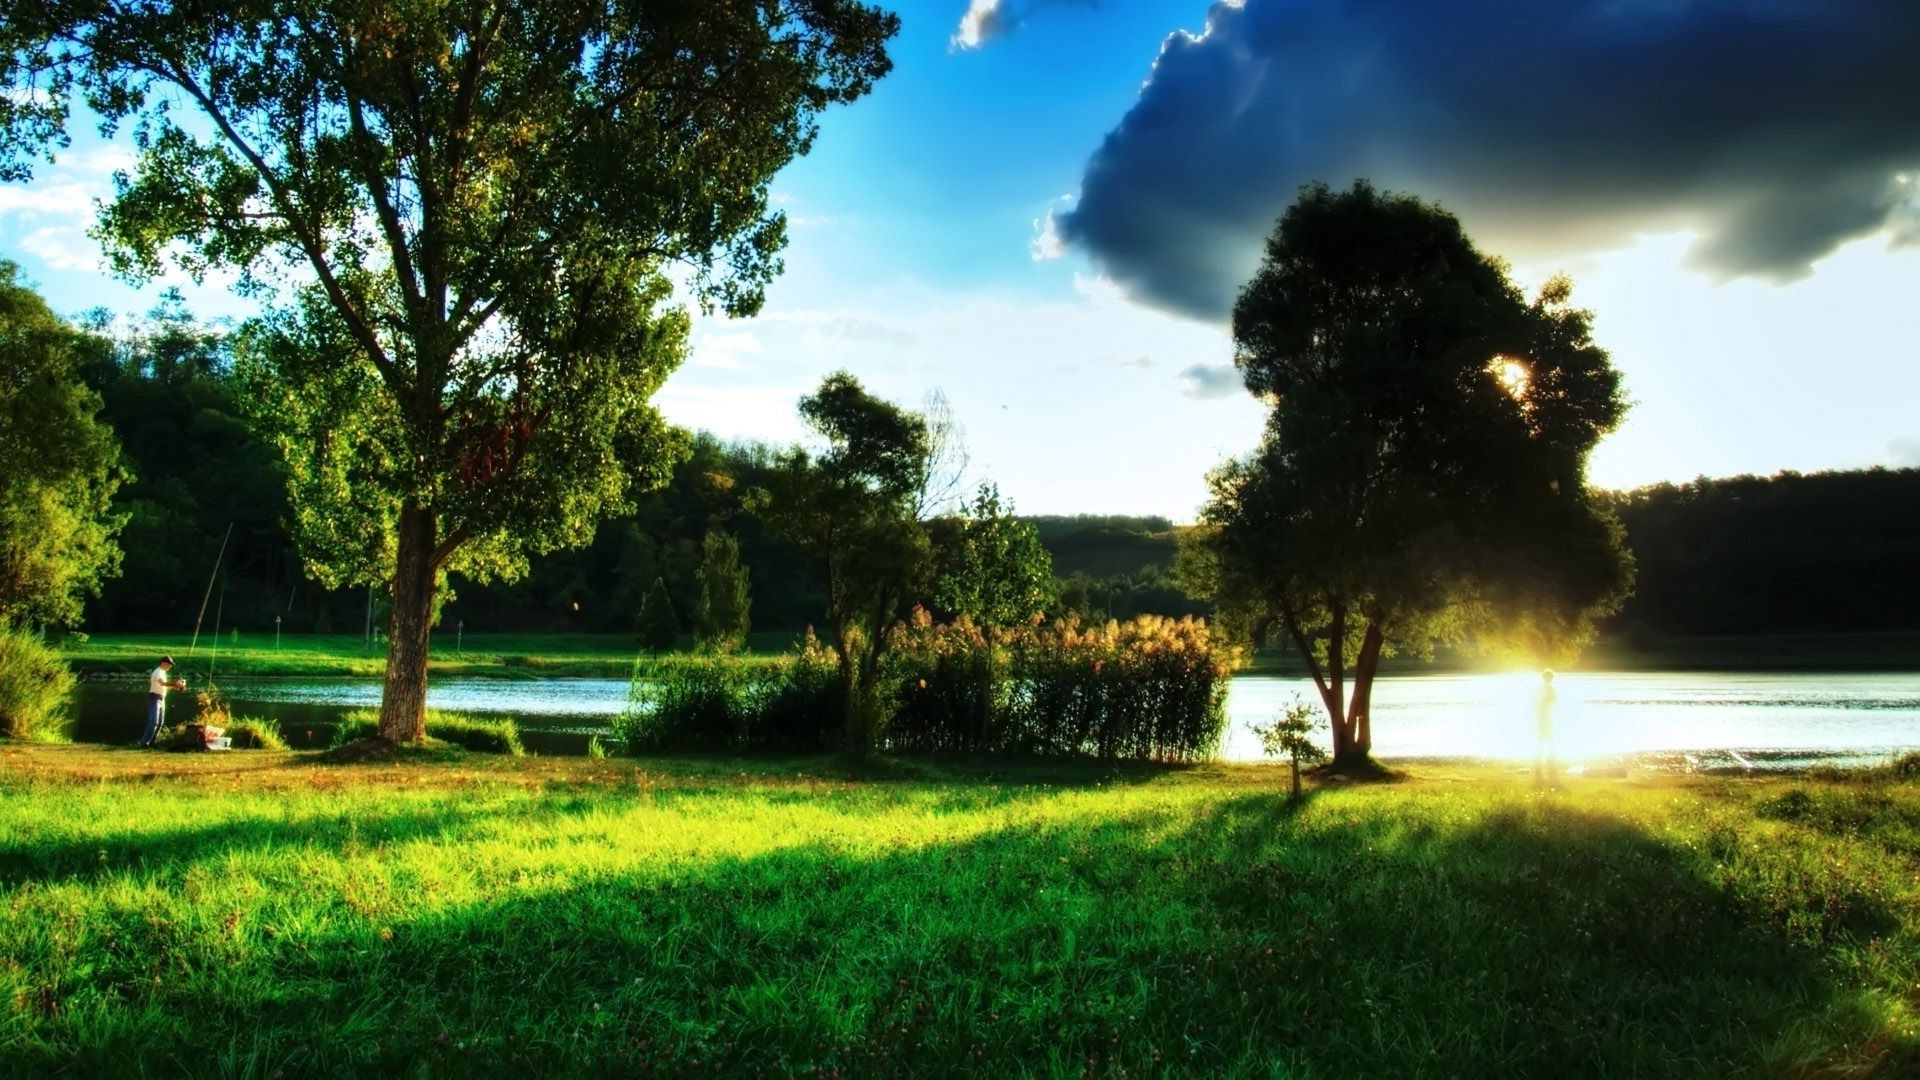 пейзажи дерево трава пейзаж природа парк солнце на открытом воздухе хорошую погоду сенокос лето сельских рассвет газон сельской местности поле среды древесины живописный небо